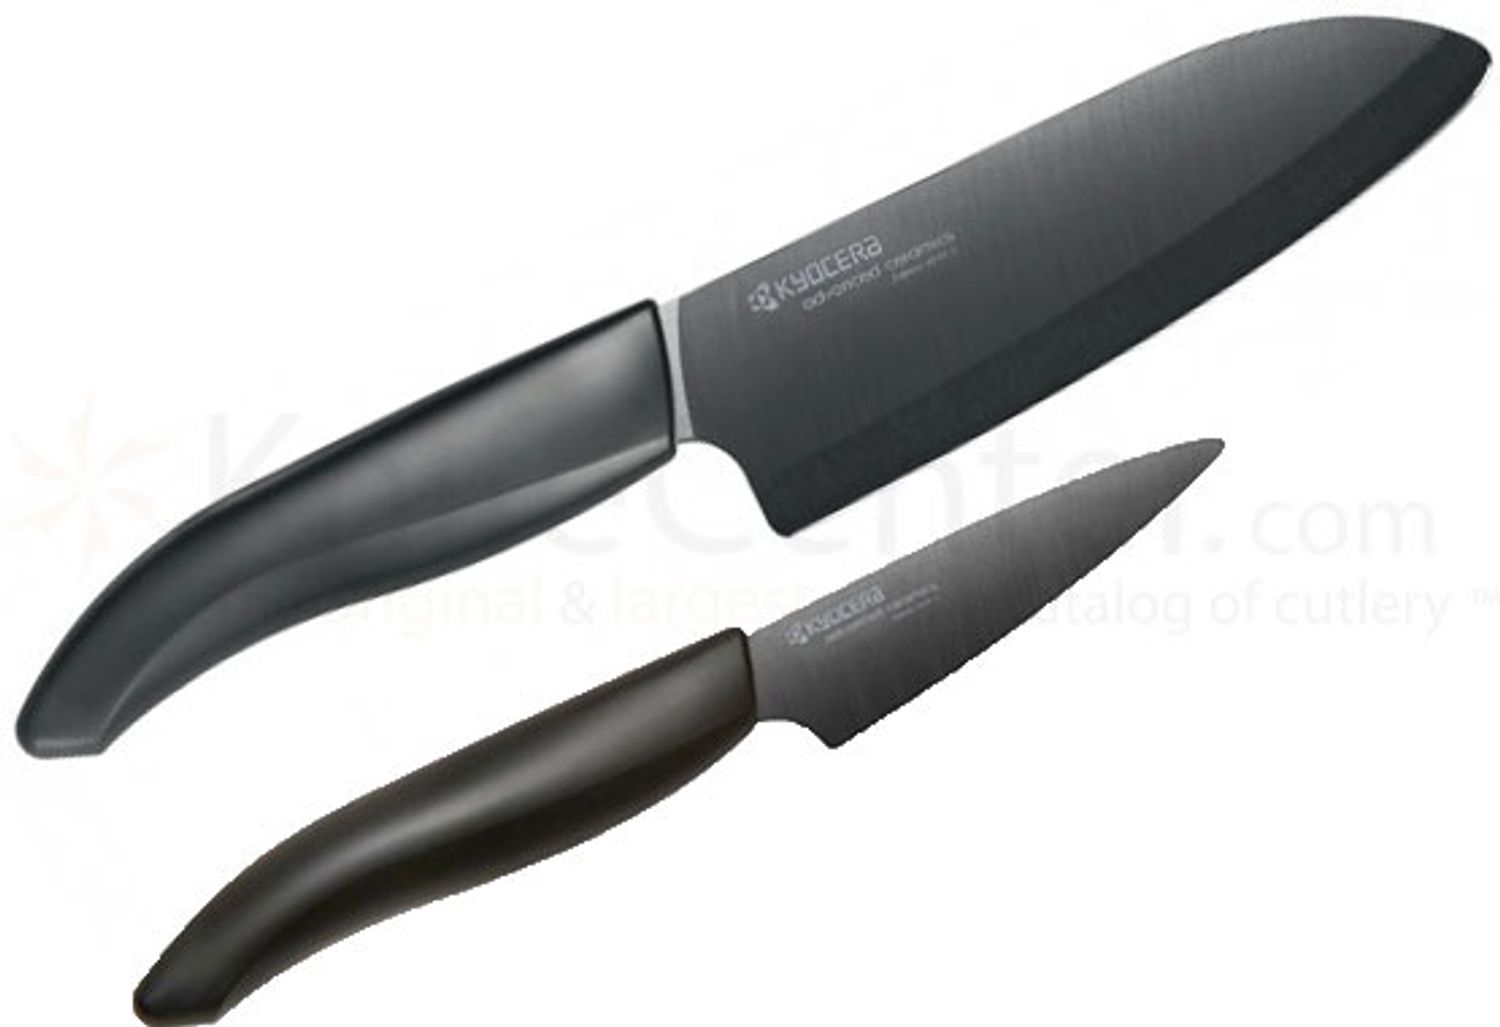 https://pics.knifecenter.com/fit-in/1500x1500/knifecenter/kyocera/images/KCFK2PCBK.jpg